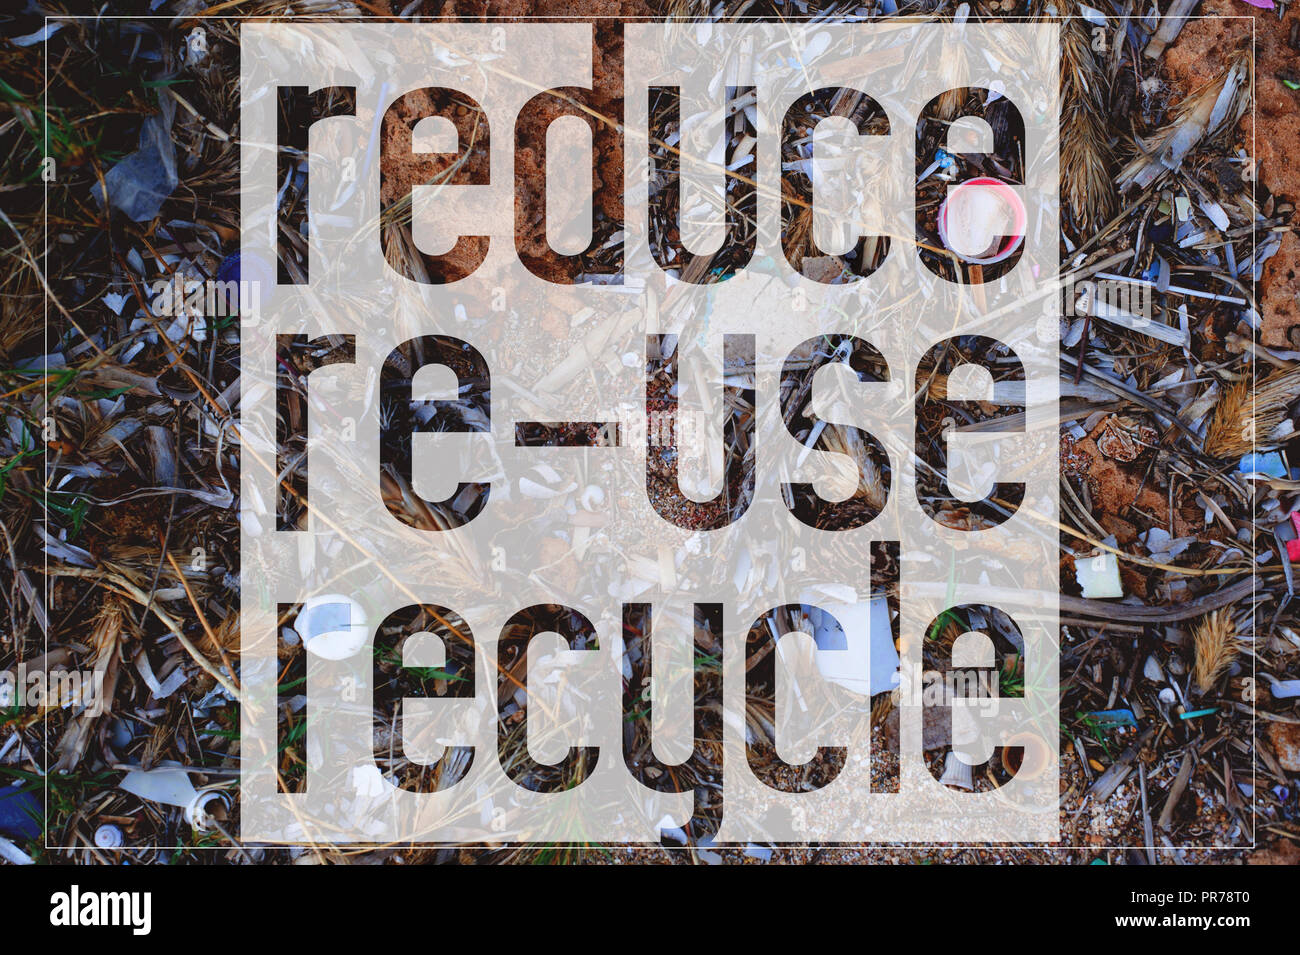 Testo ridurre, riutilizzare e riciclare. Come sfondo si trova la foto di rifiuti di plastica lavati fino sulla spiaggia. Scheda di motivazione. Foto Stock